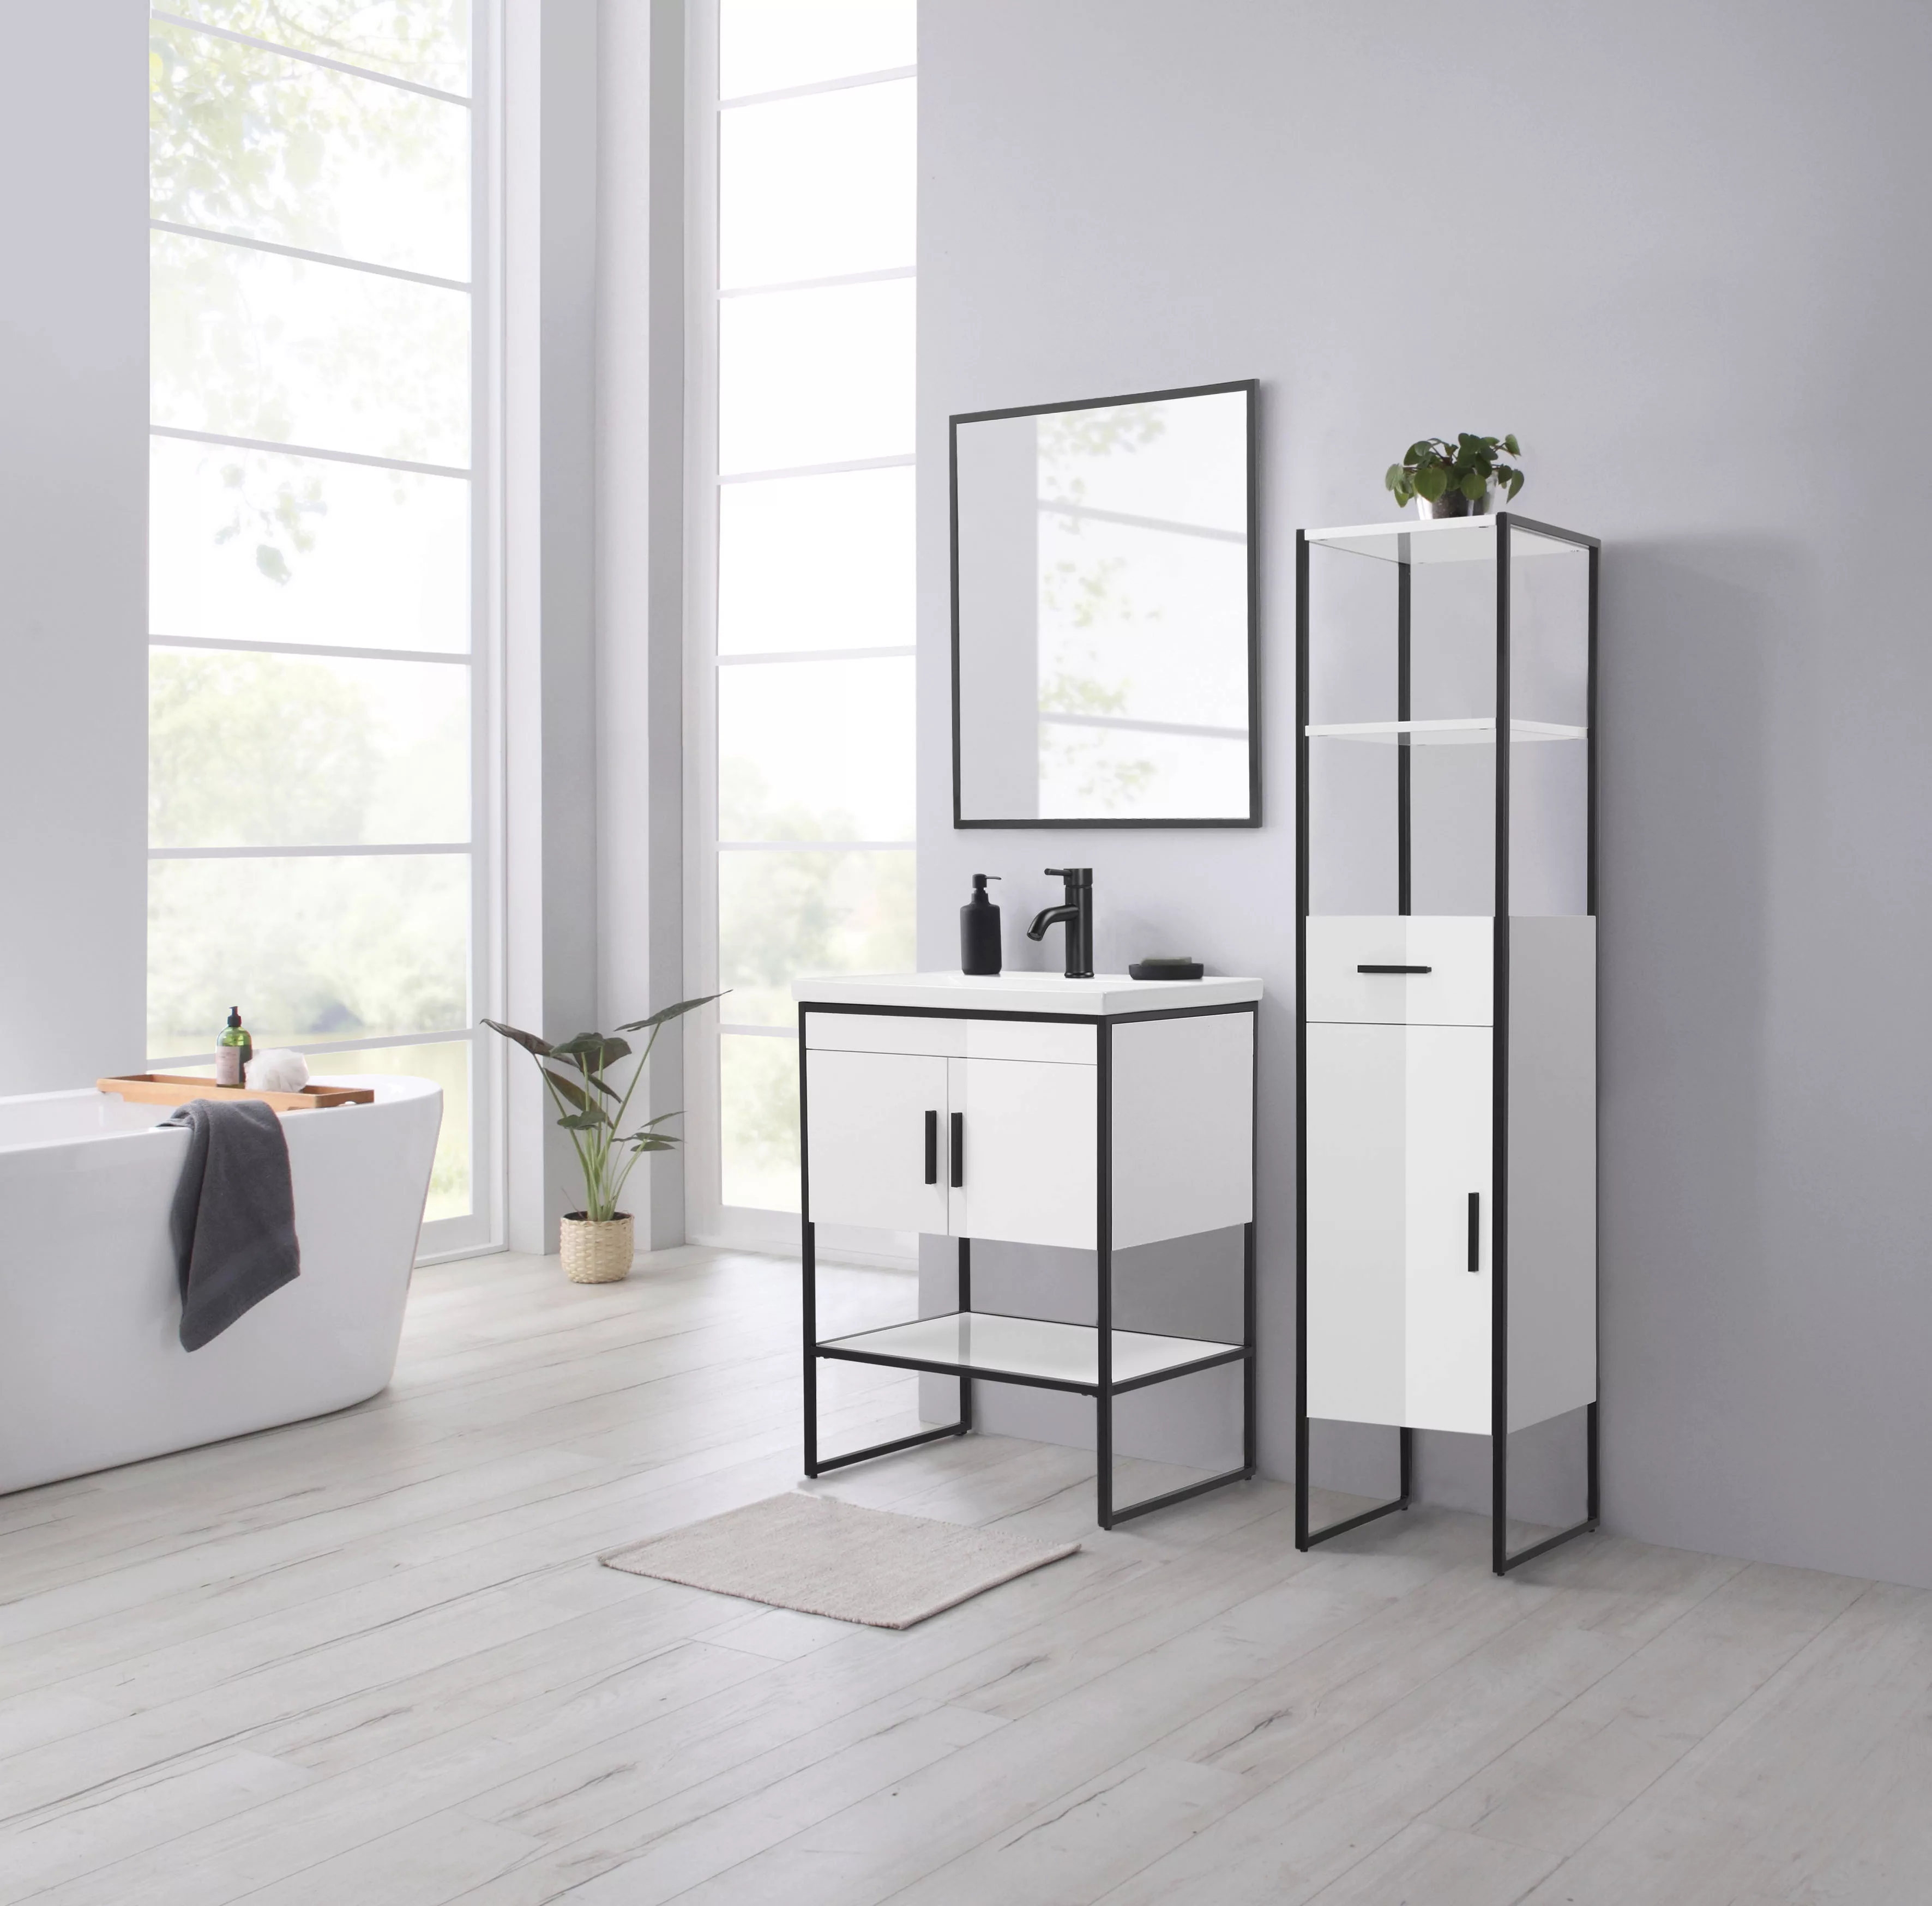 welltime Badspiegel "Pisa Loftstyle modern", Spiegel Wohnwarumspiegel 60 x günstig online kaufen